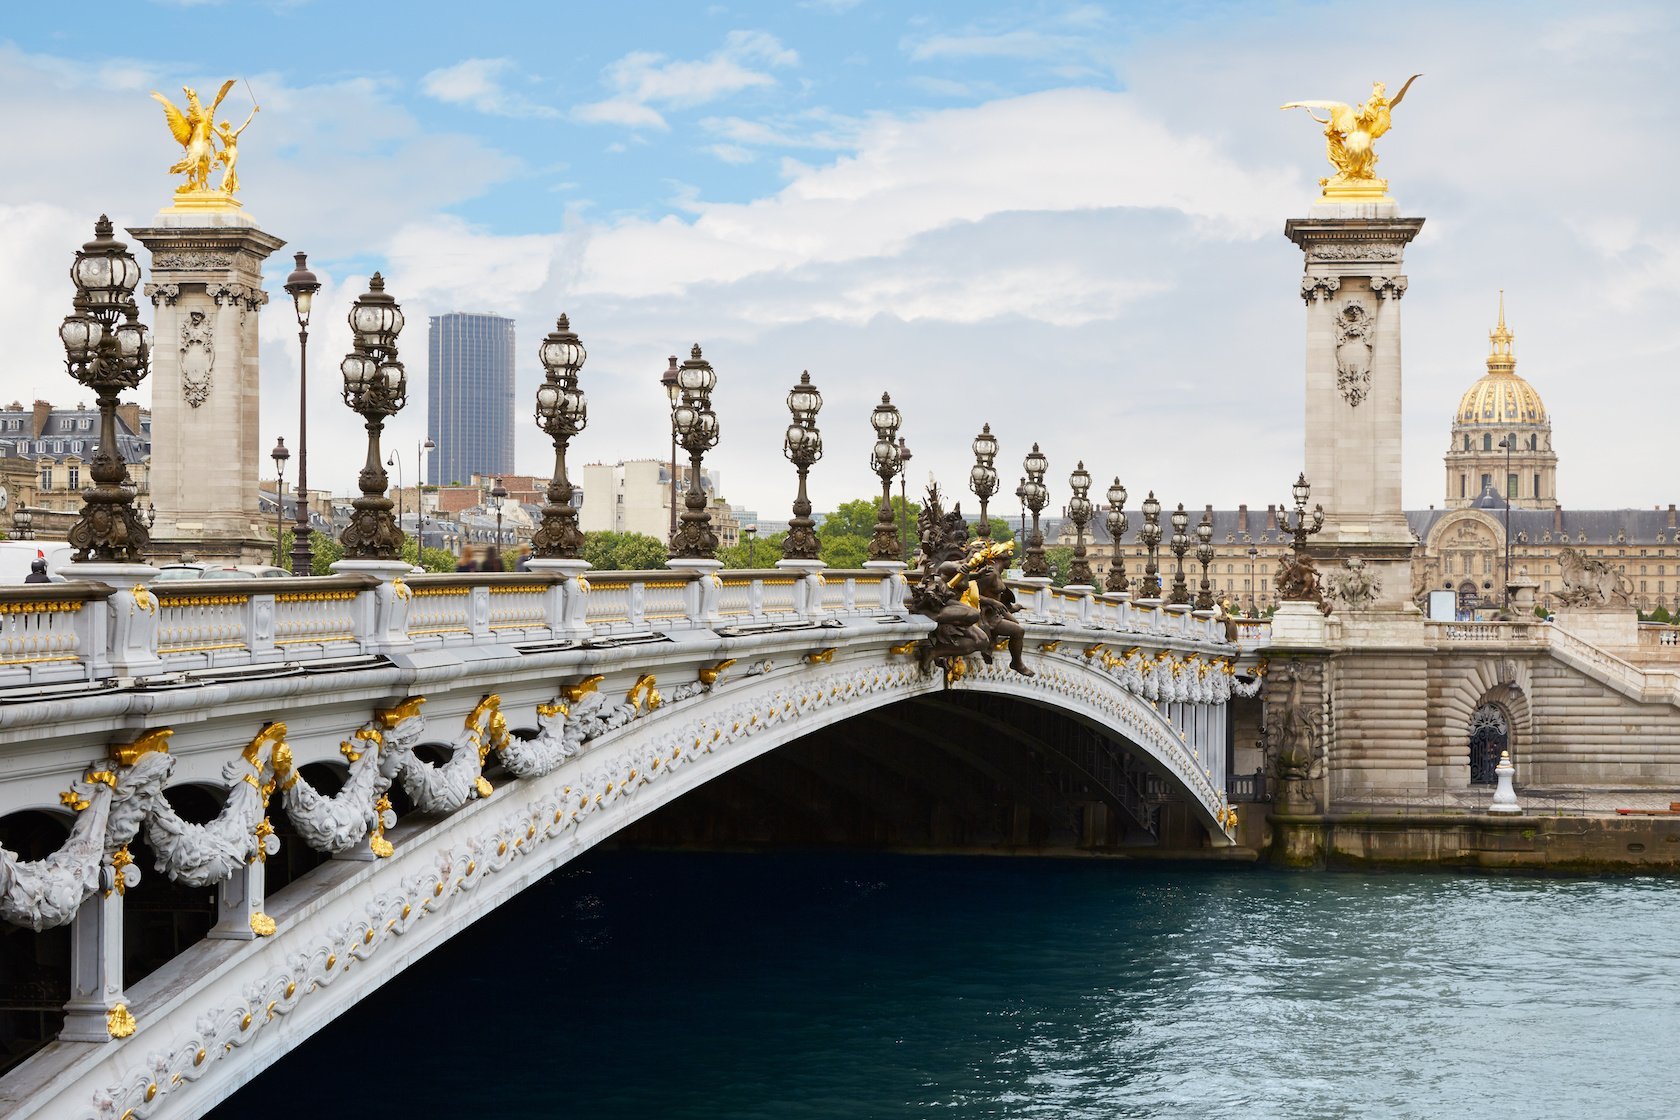 Bridges in Paris - Top 5 Most Beautiful Bridges in Paris | My Paris Today